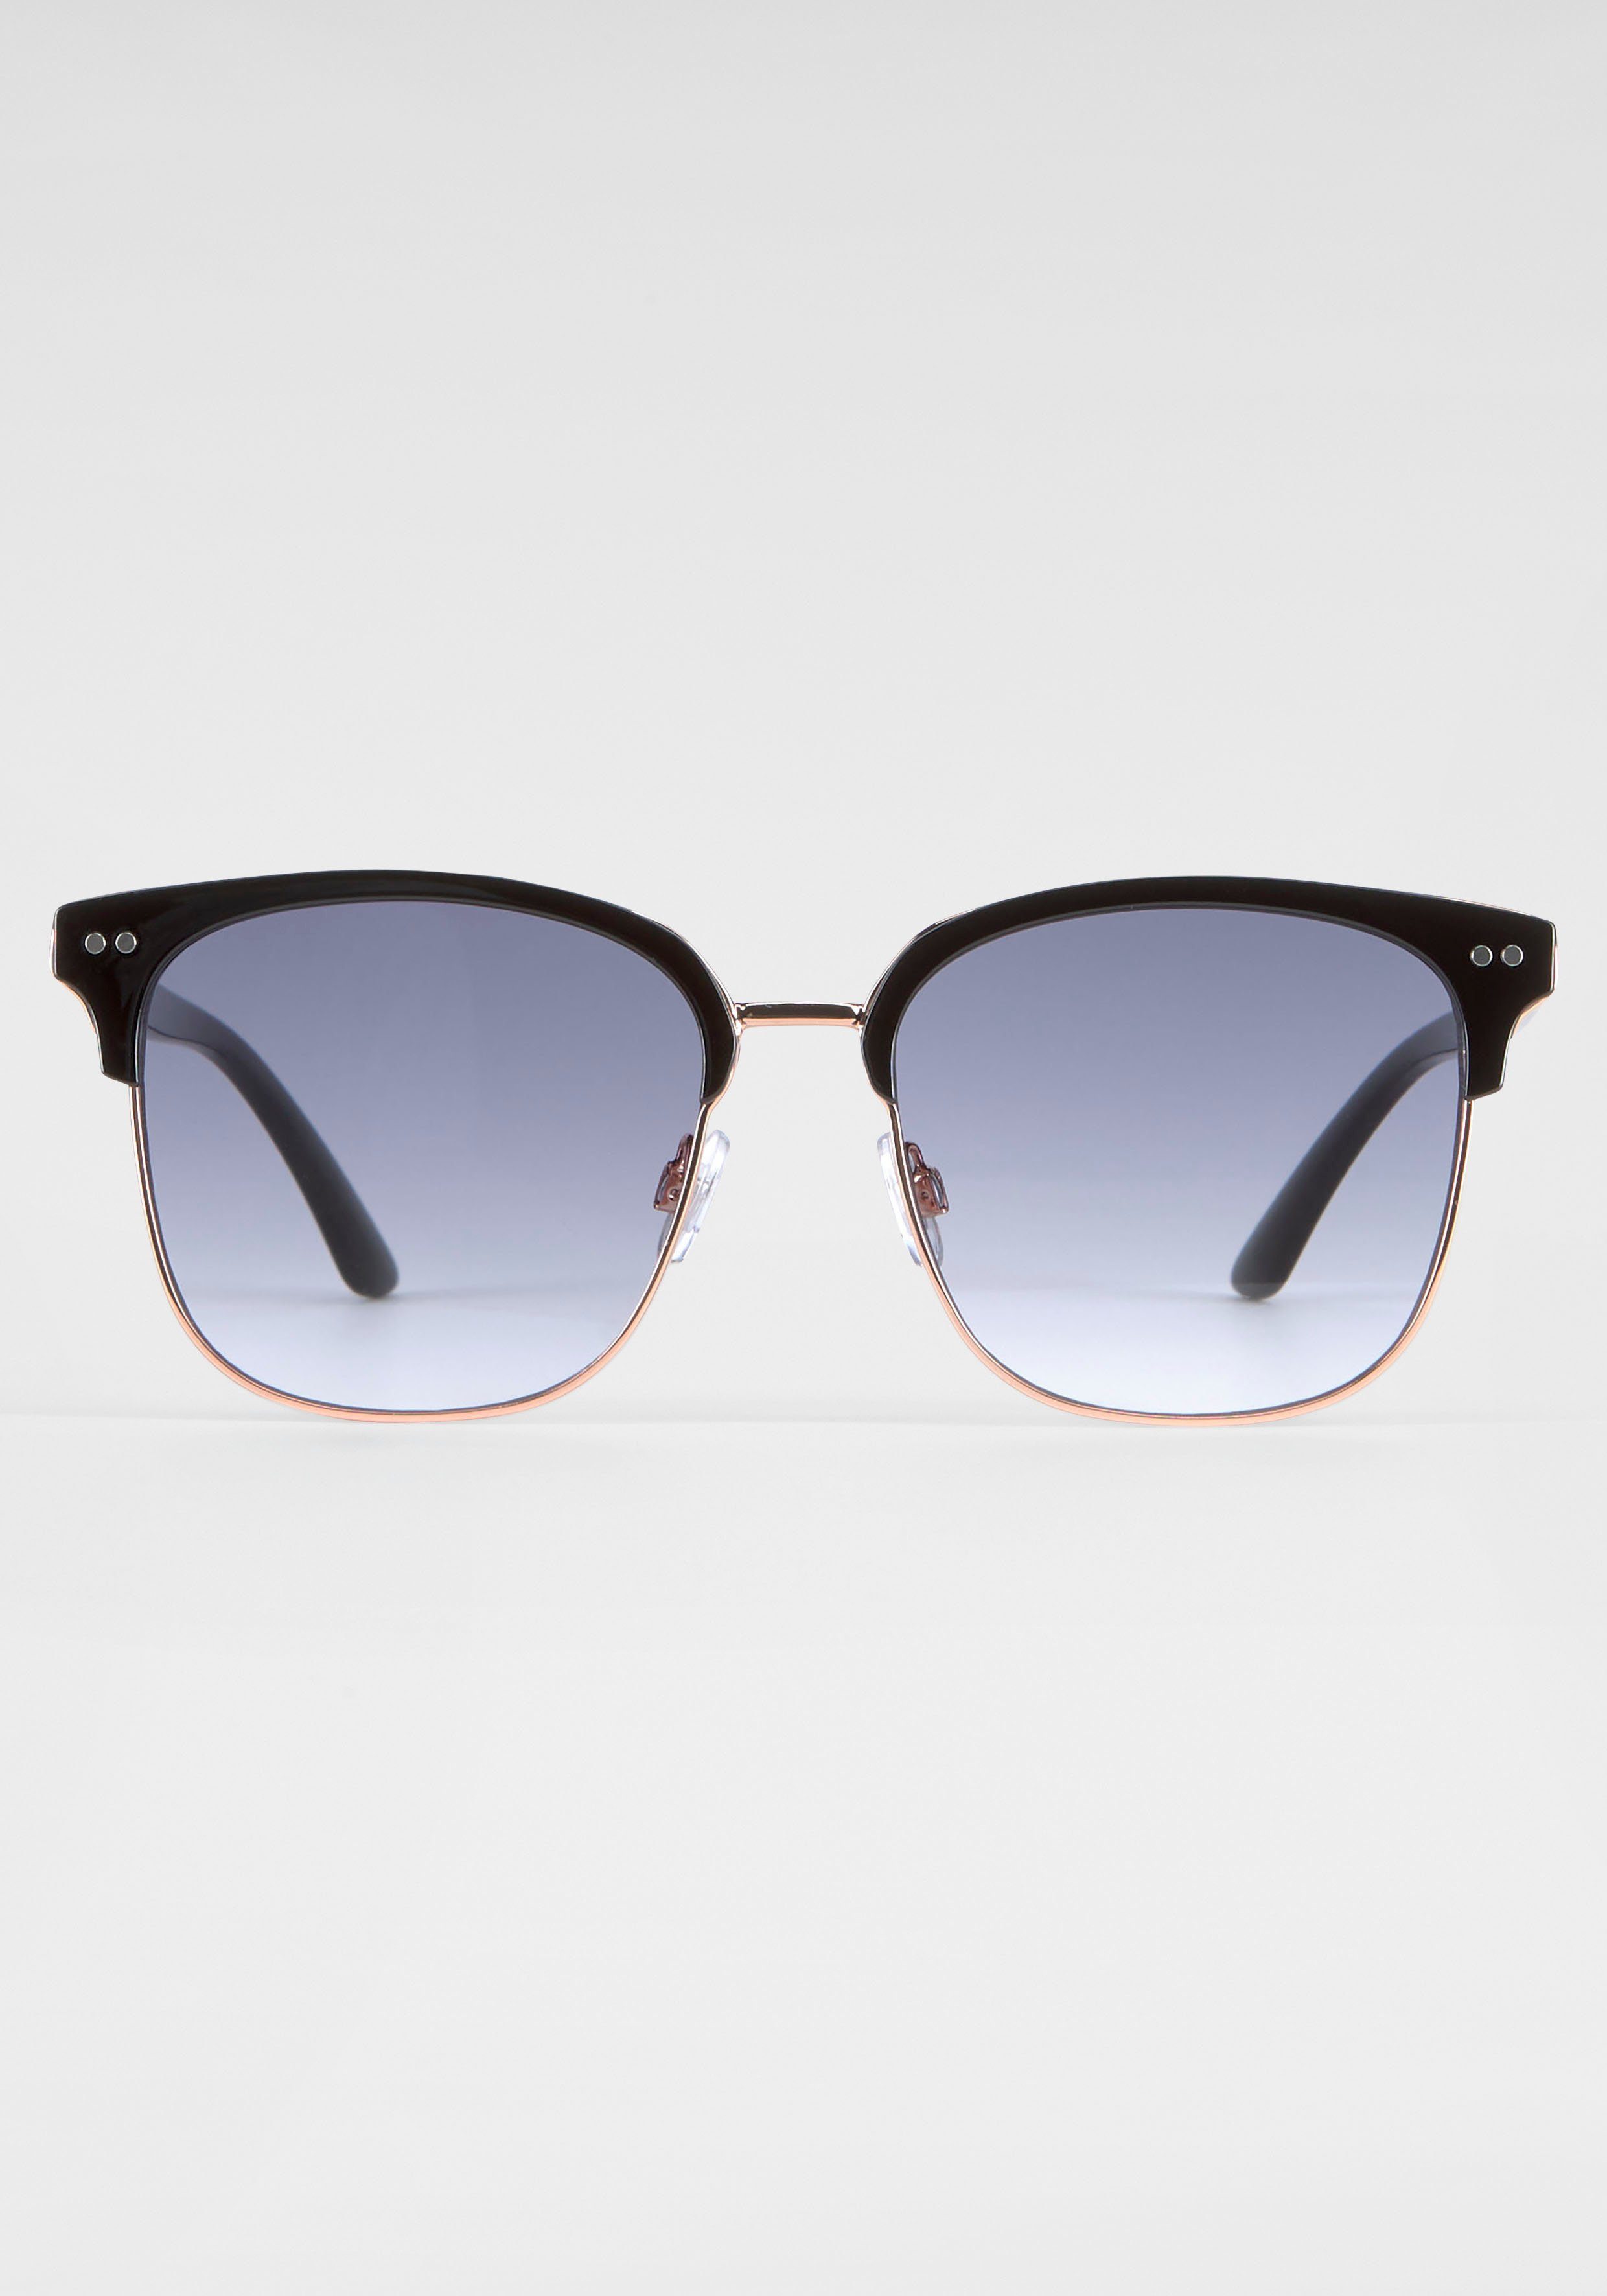 BACK IN BLACK Eyewear Sonnenbrille mit Gläsern schwarz gebogenen